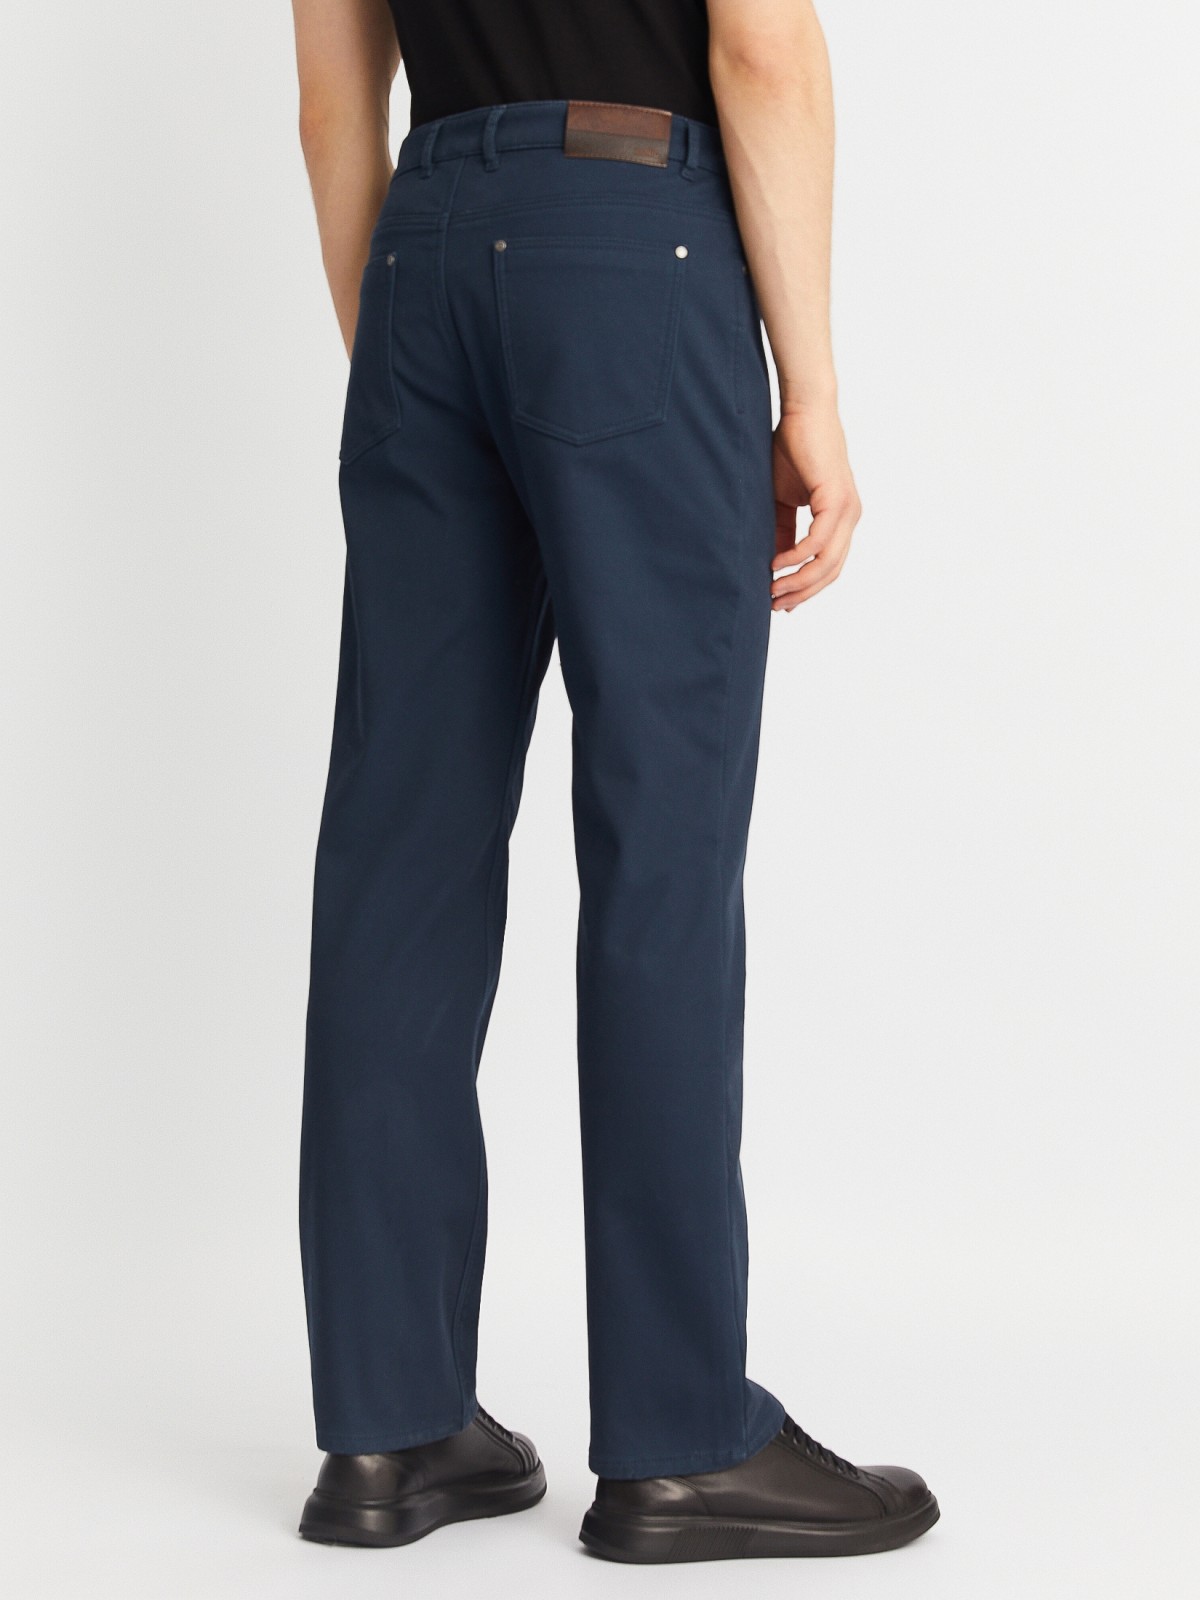 Утеплённые прямые брюки из хлопка с подкладкой из флиса zolla 01243730L013, цвет голубой, размер 30 - фото 5